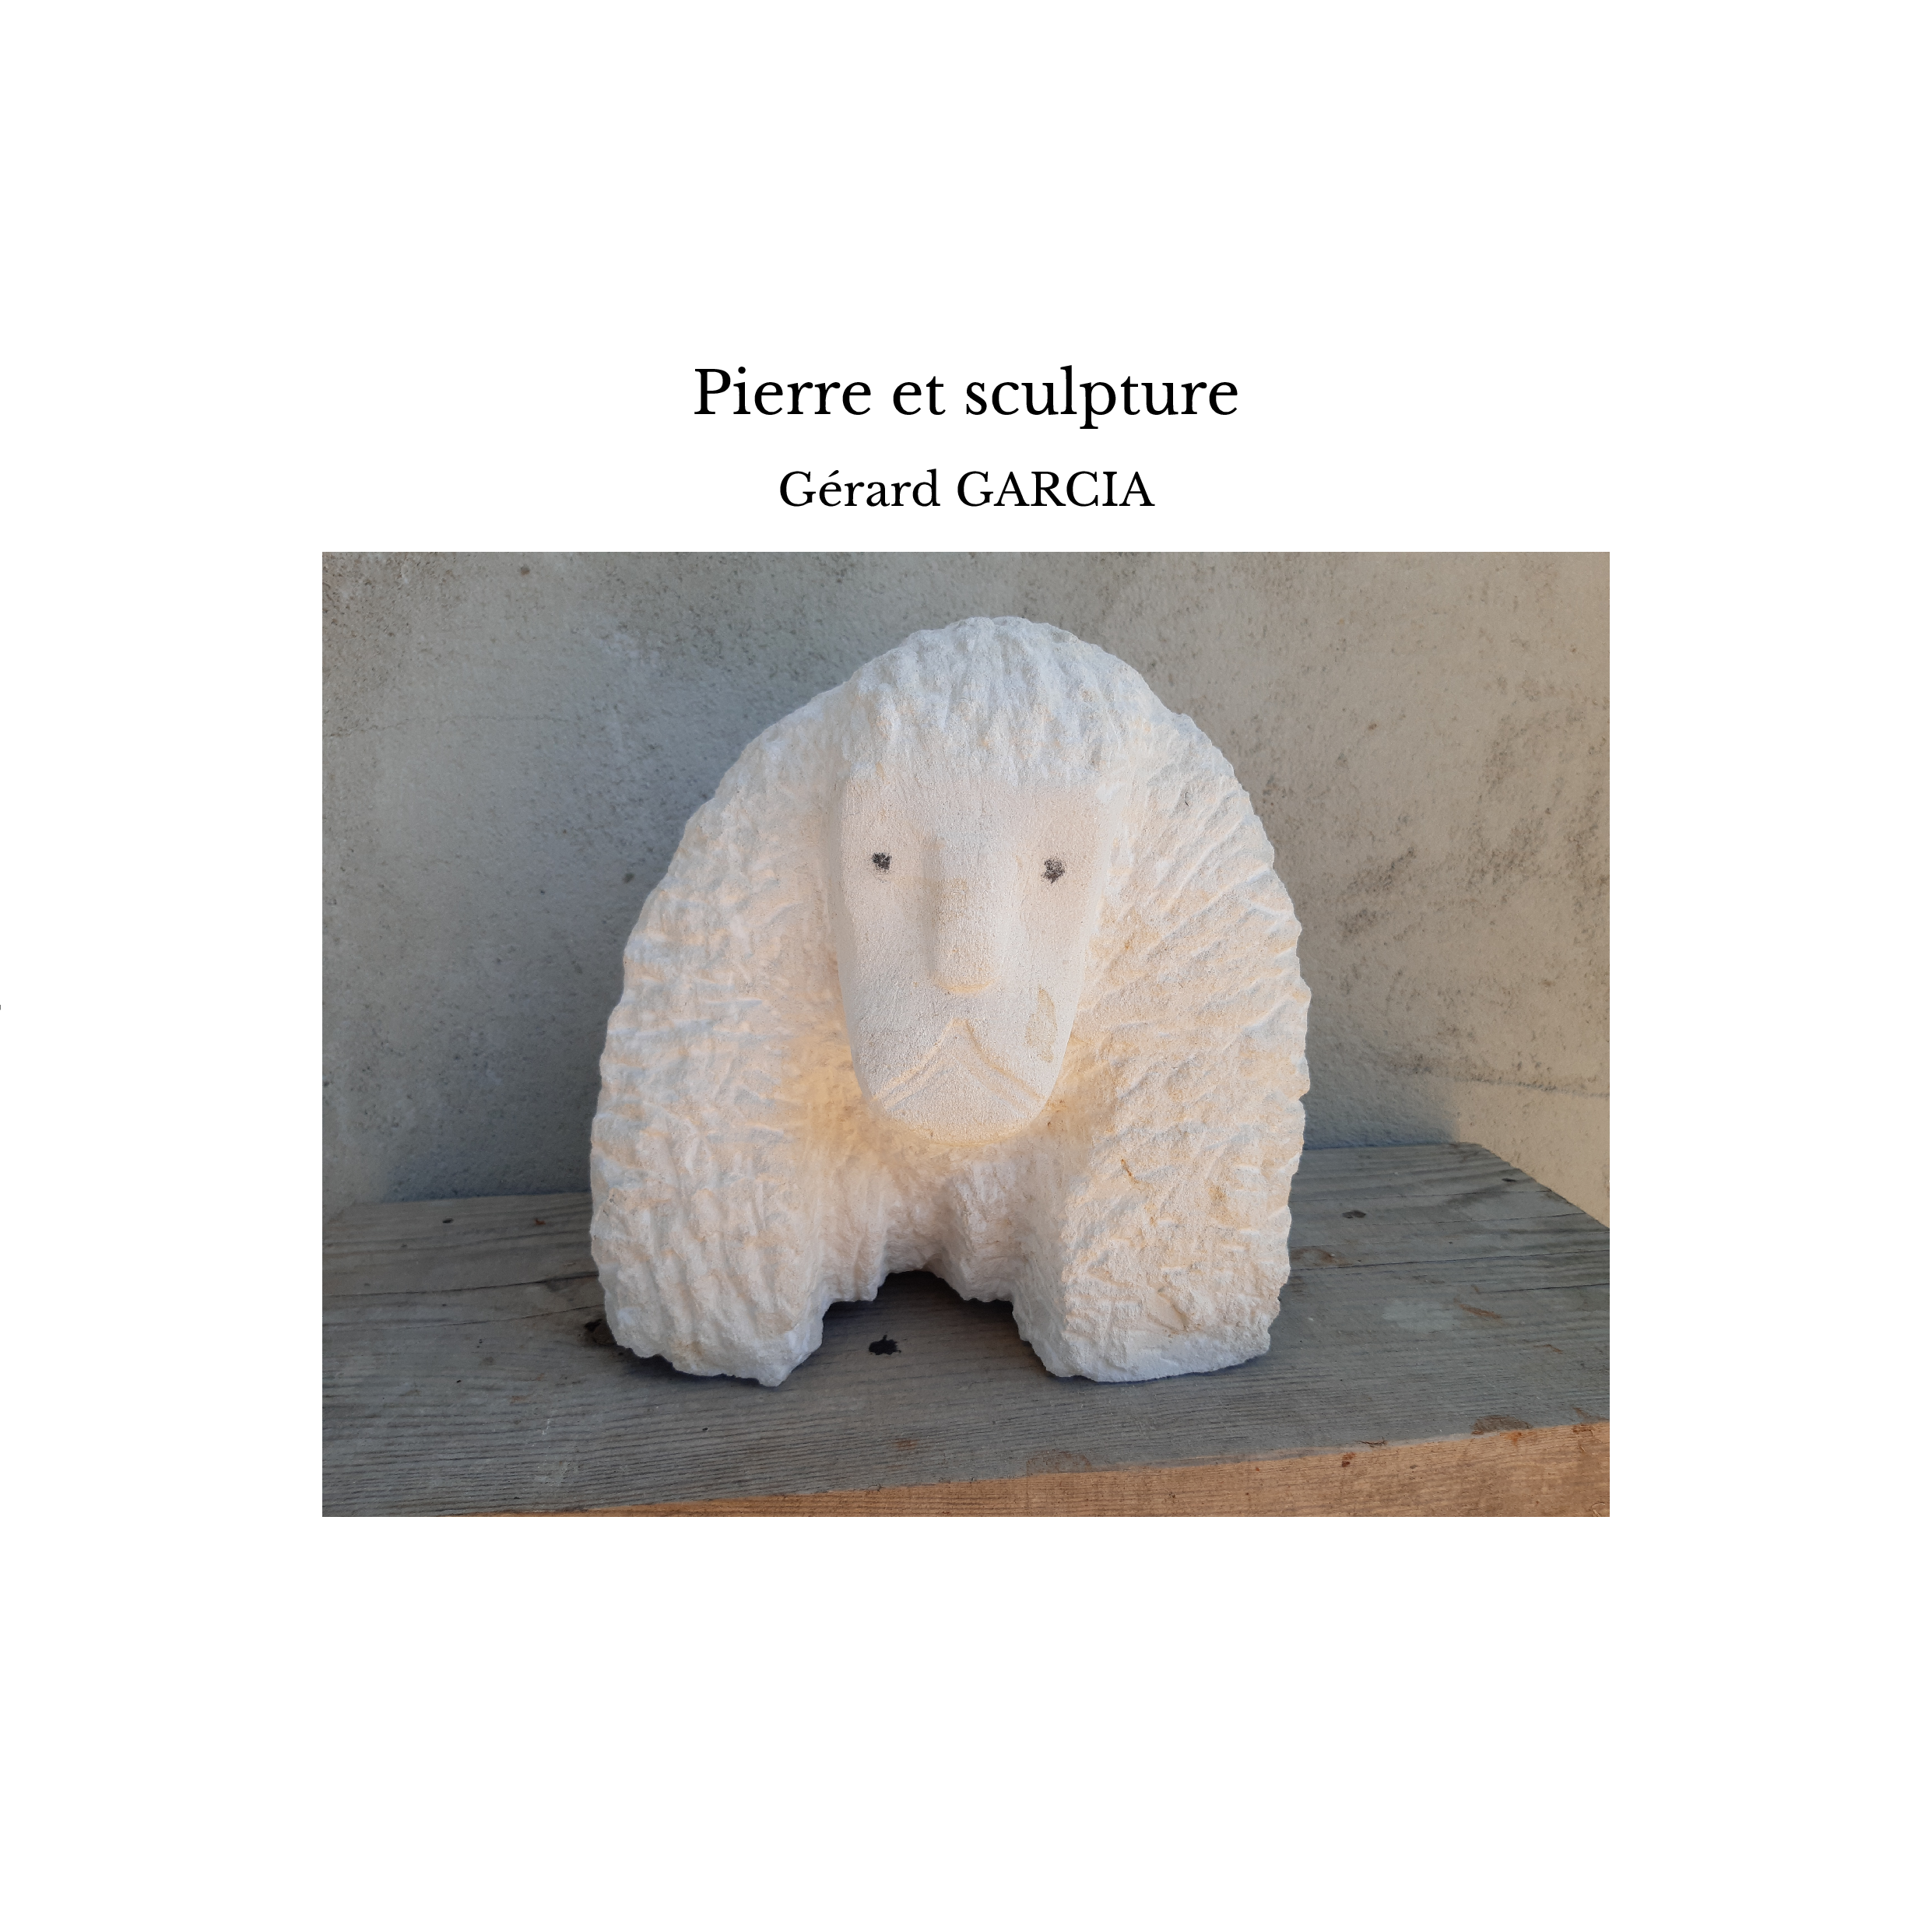 Pierre et sculpture